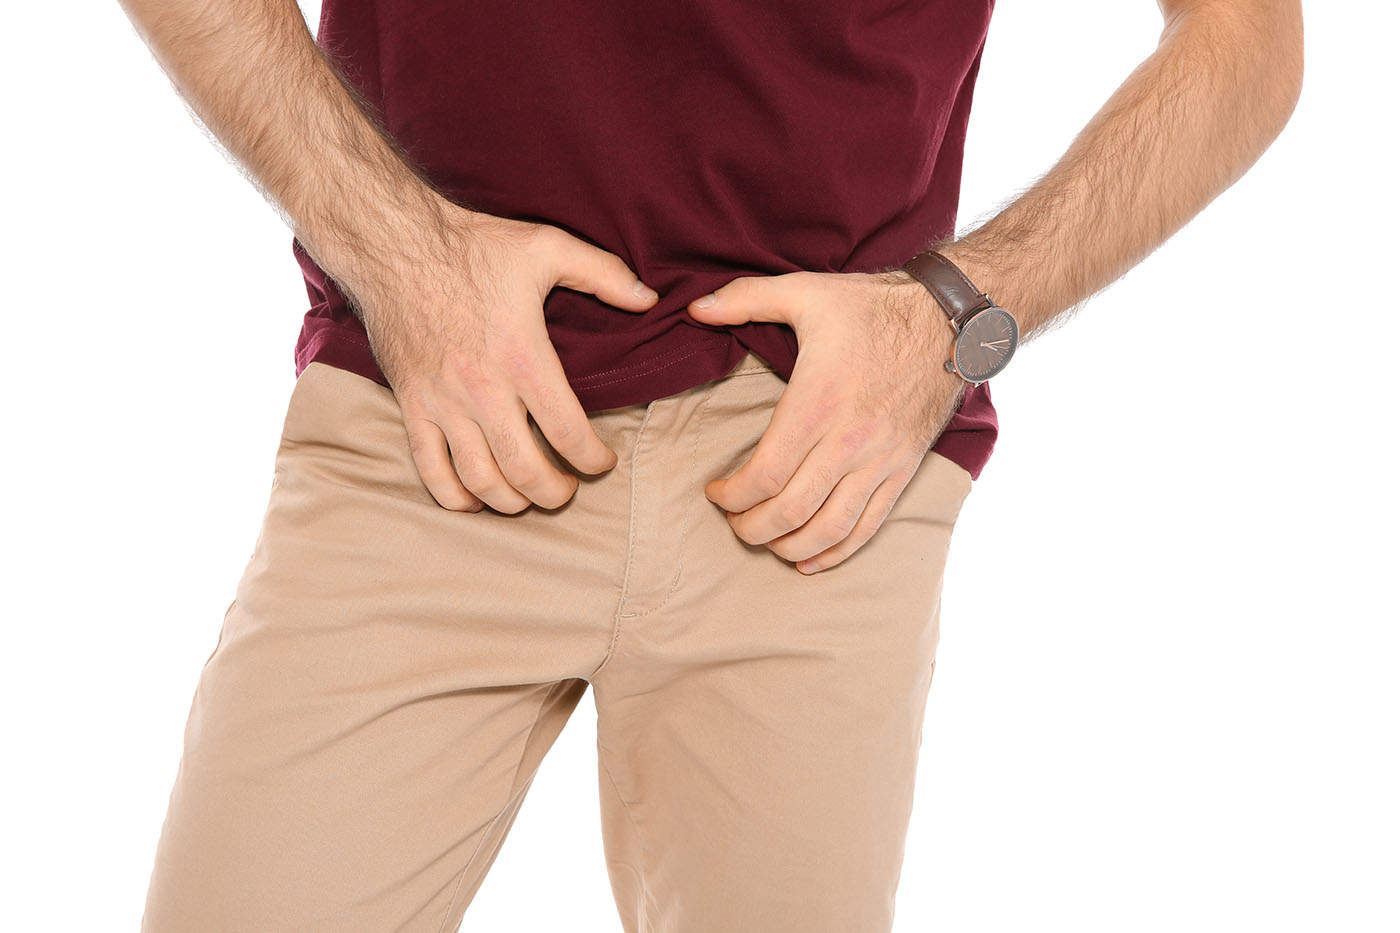 puncte de grasime la baza penisului e din cauza ingrasarii? | Forumul Medical ROmedic